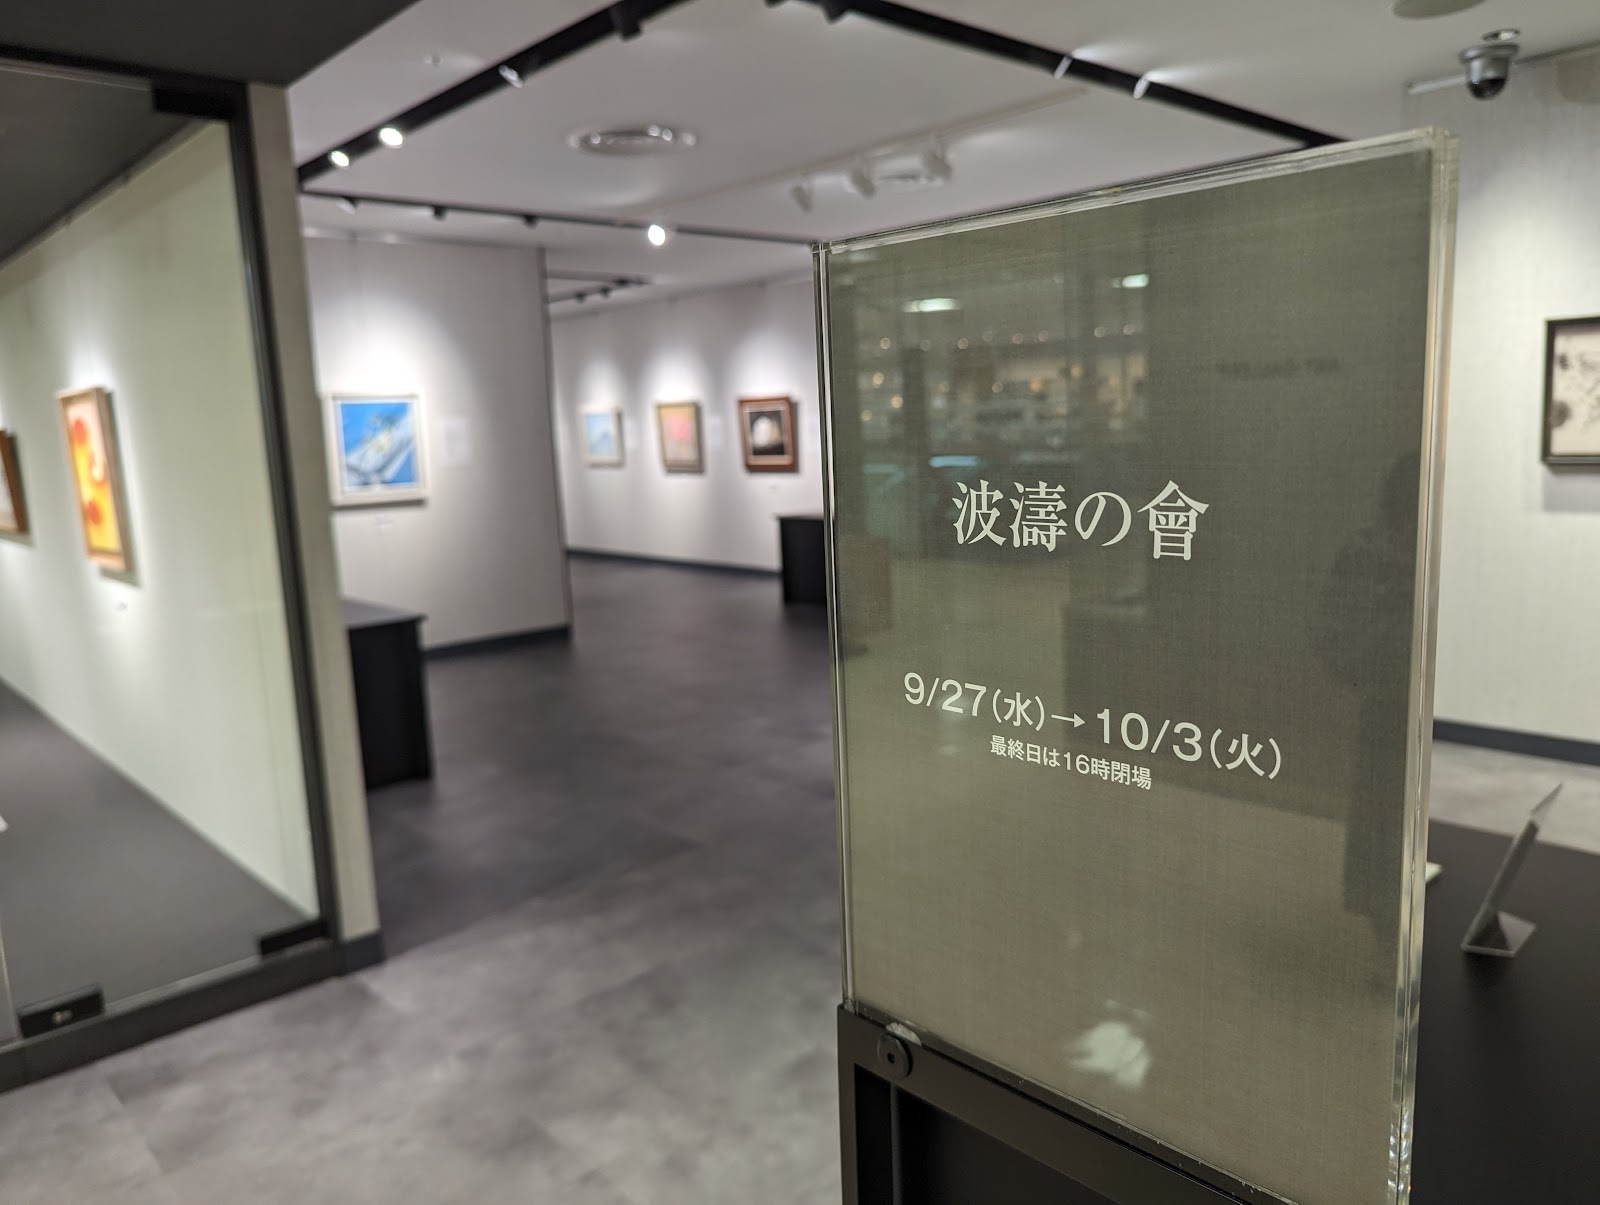 松坂屋上野店 美術画廊の風景